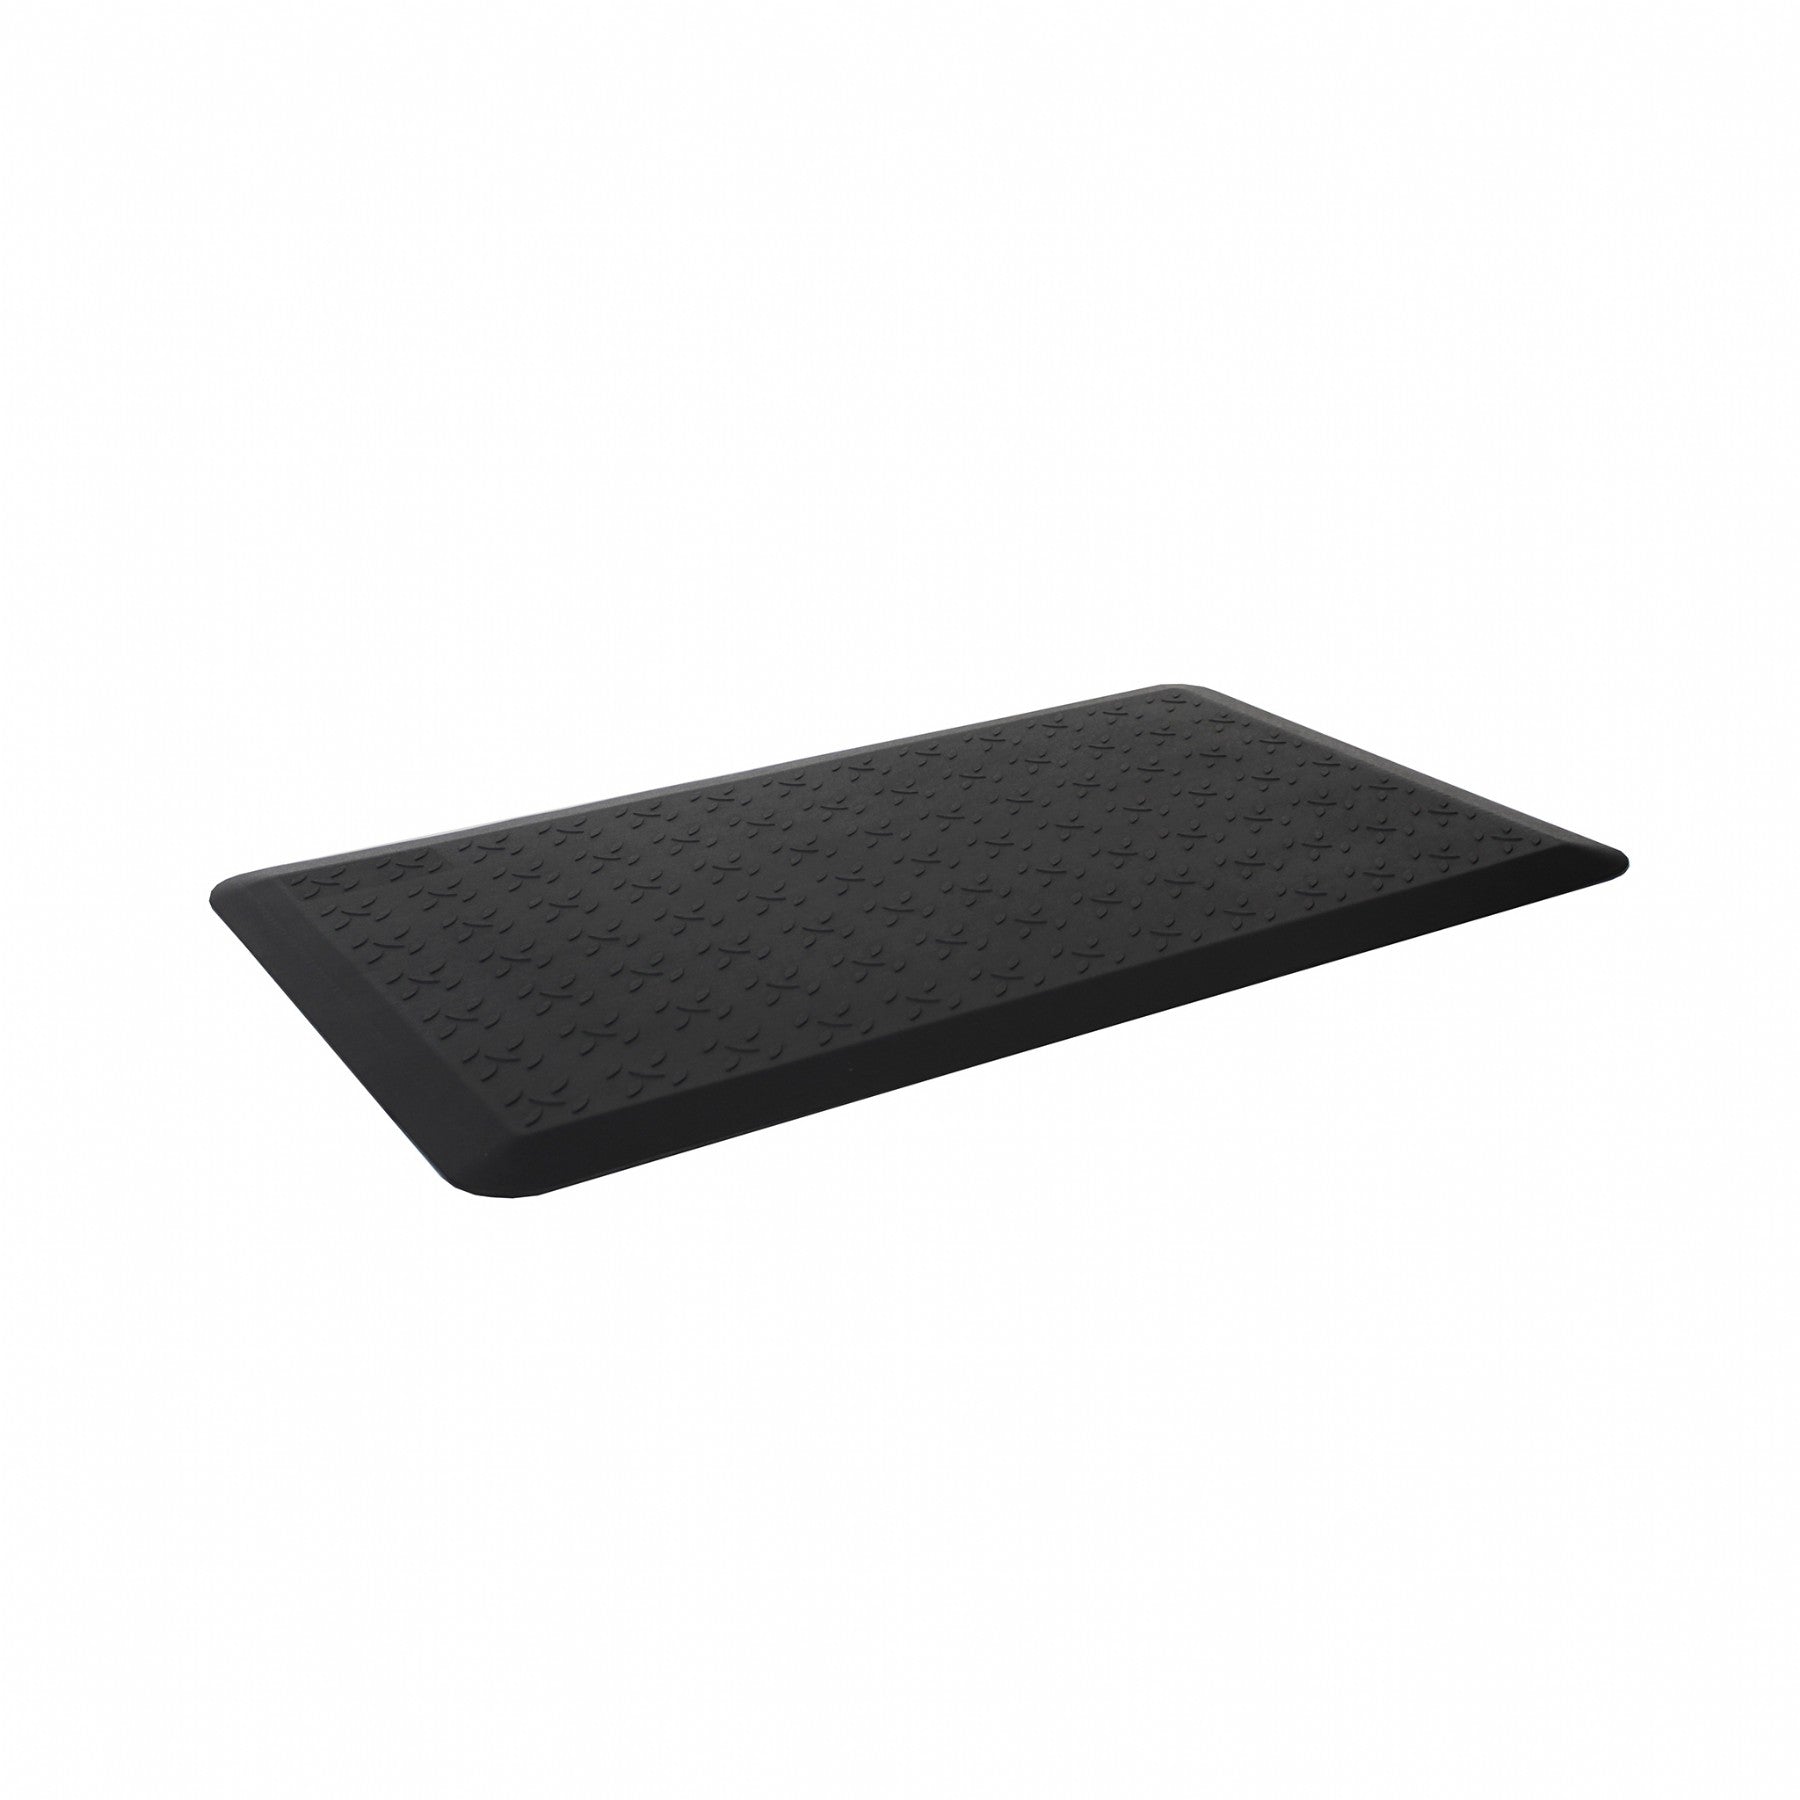 Mobel Anti-Fatigue Standing Desk Floor Mat